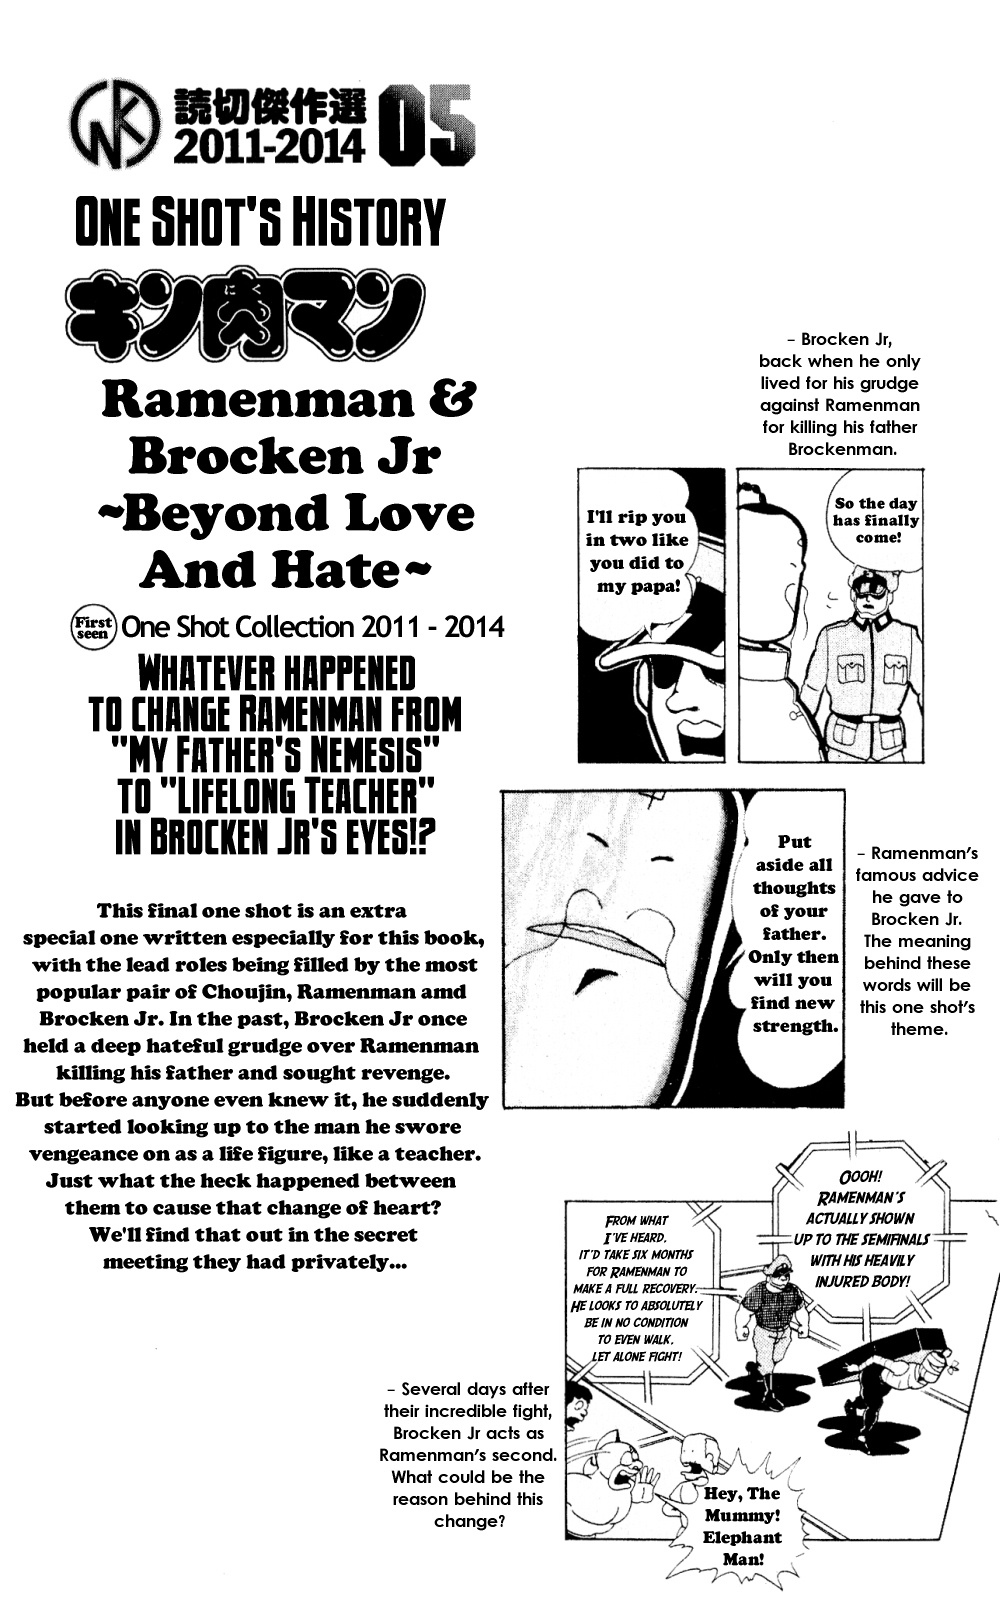 Kinnikuman One Shot Collection (2011-2014) Vol.1 Chapter 5: Ramenman & Brocken Jr. - Beyond Love And Hate - Picture 1